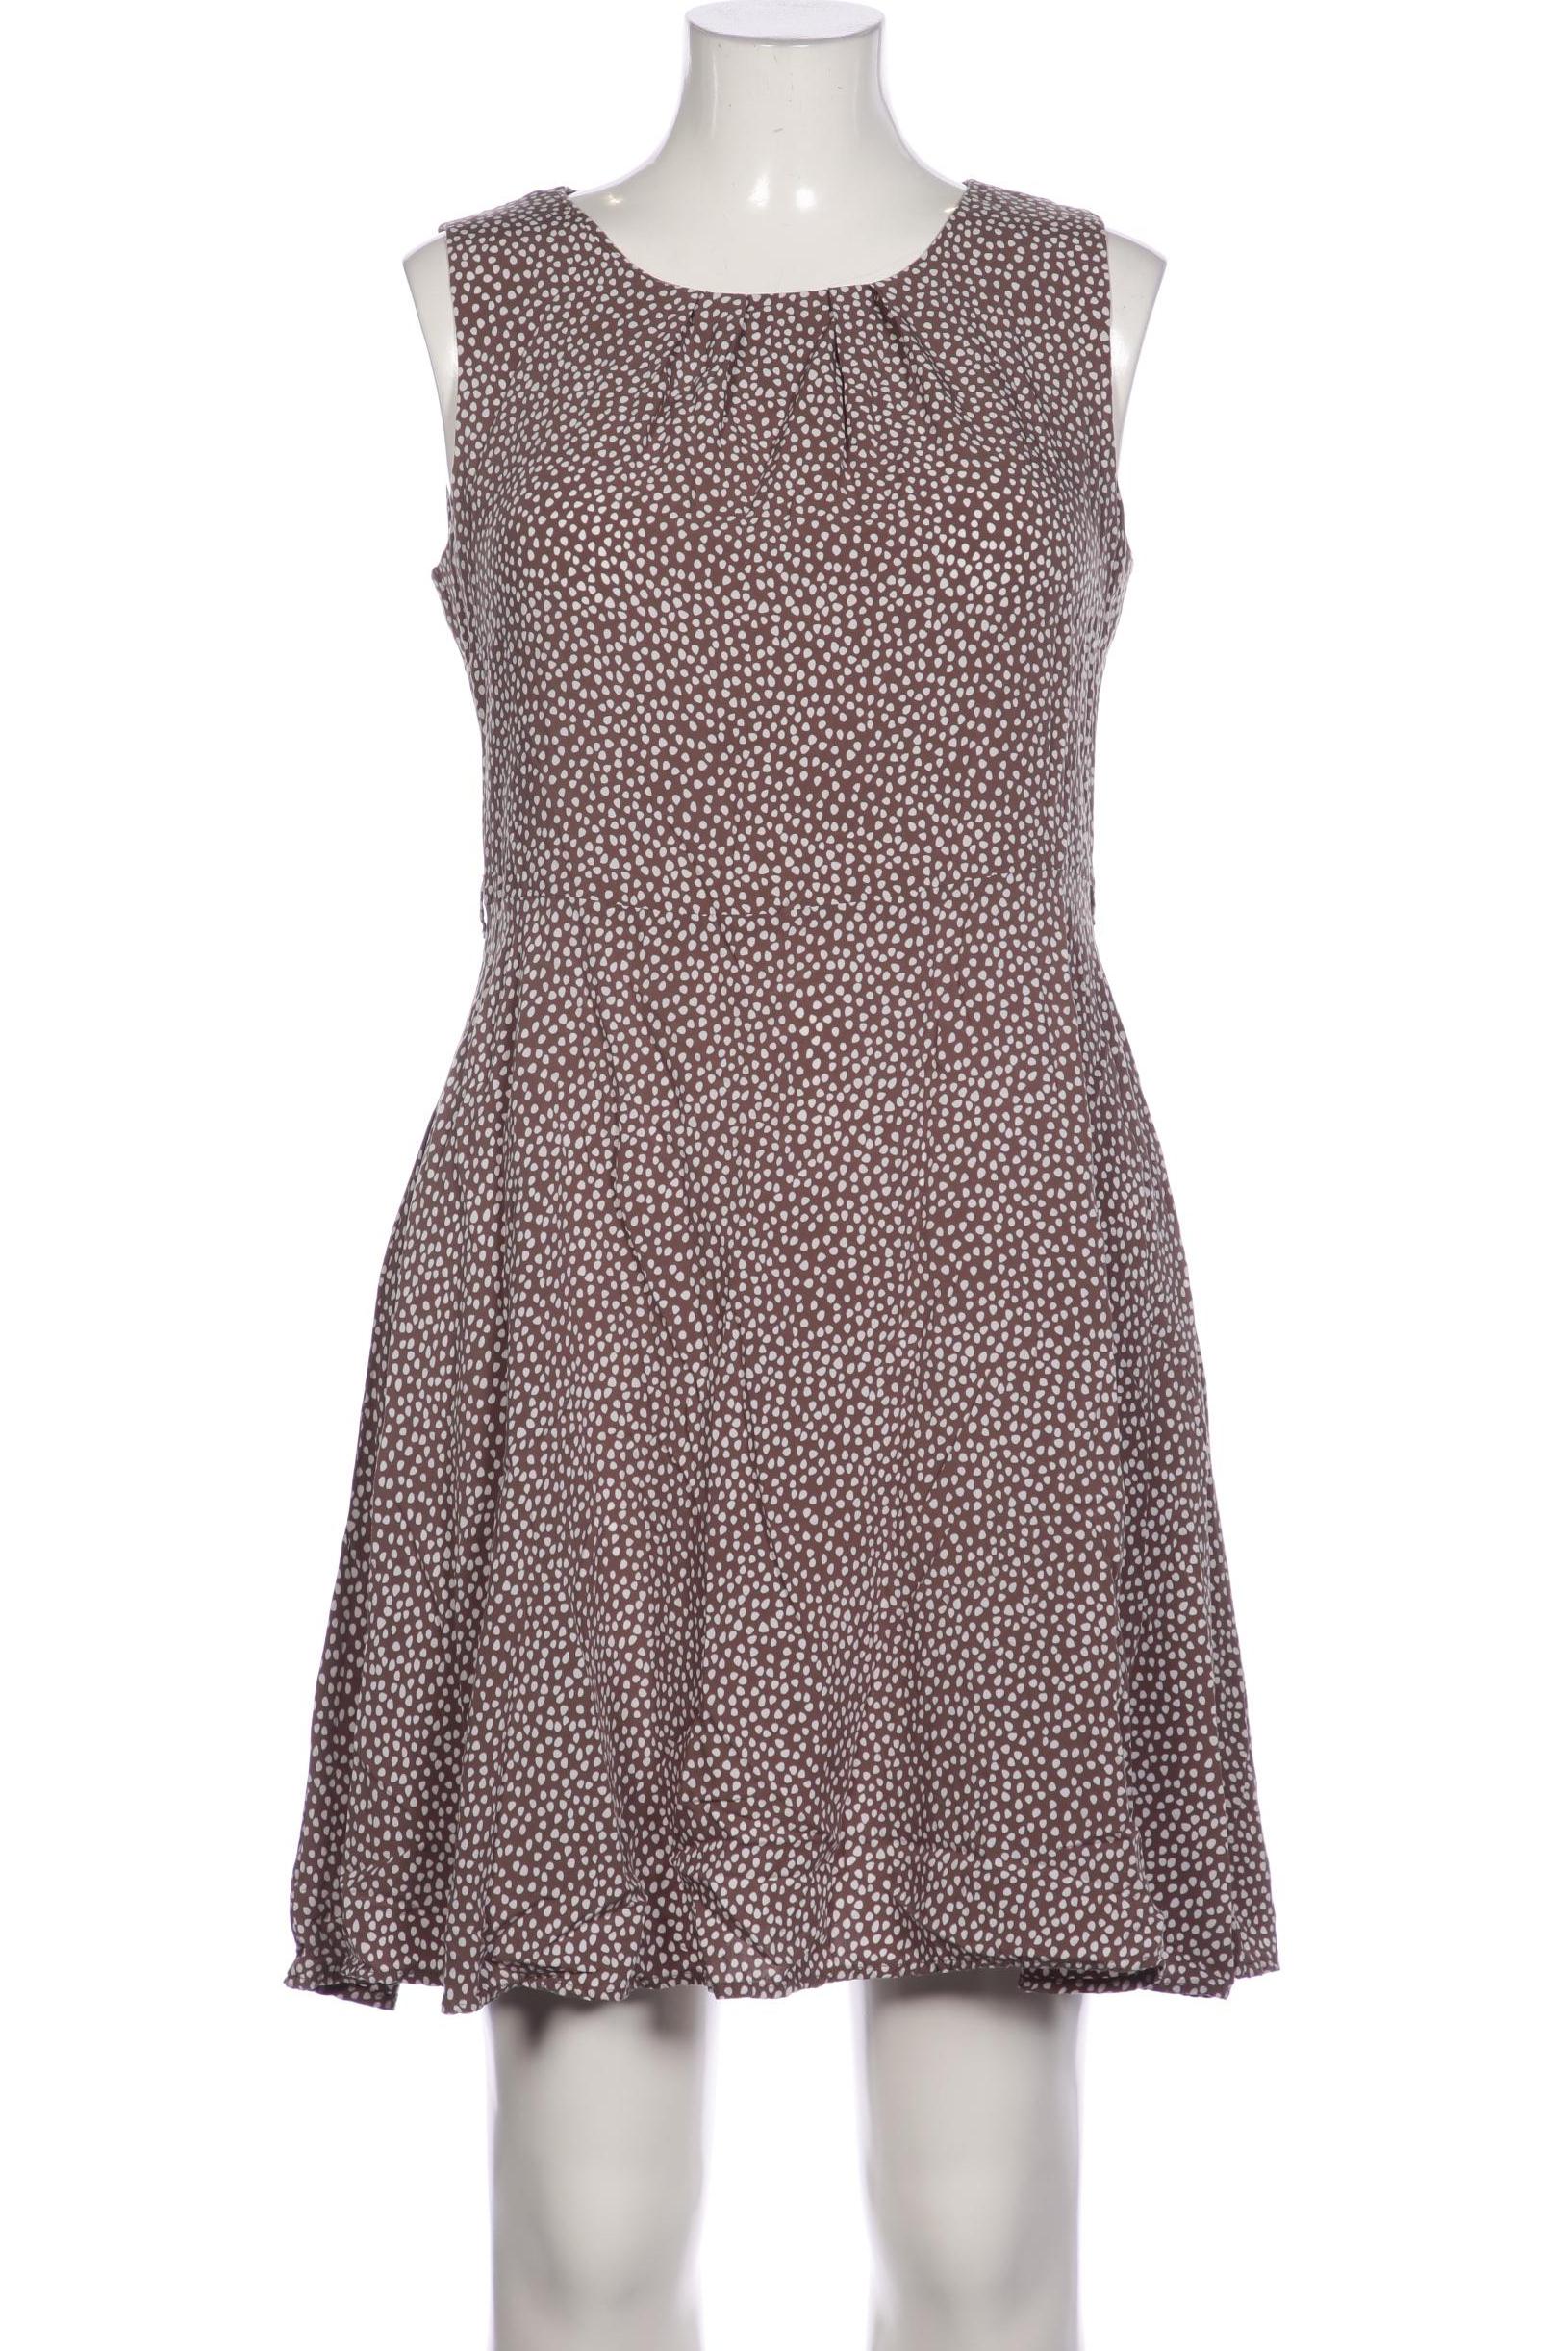 Montego Damen Kleid, braun, Gr. 42 von montego